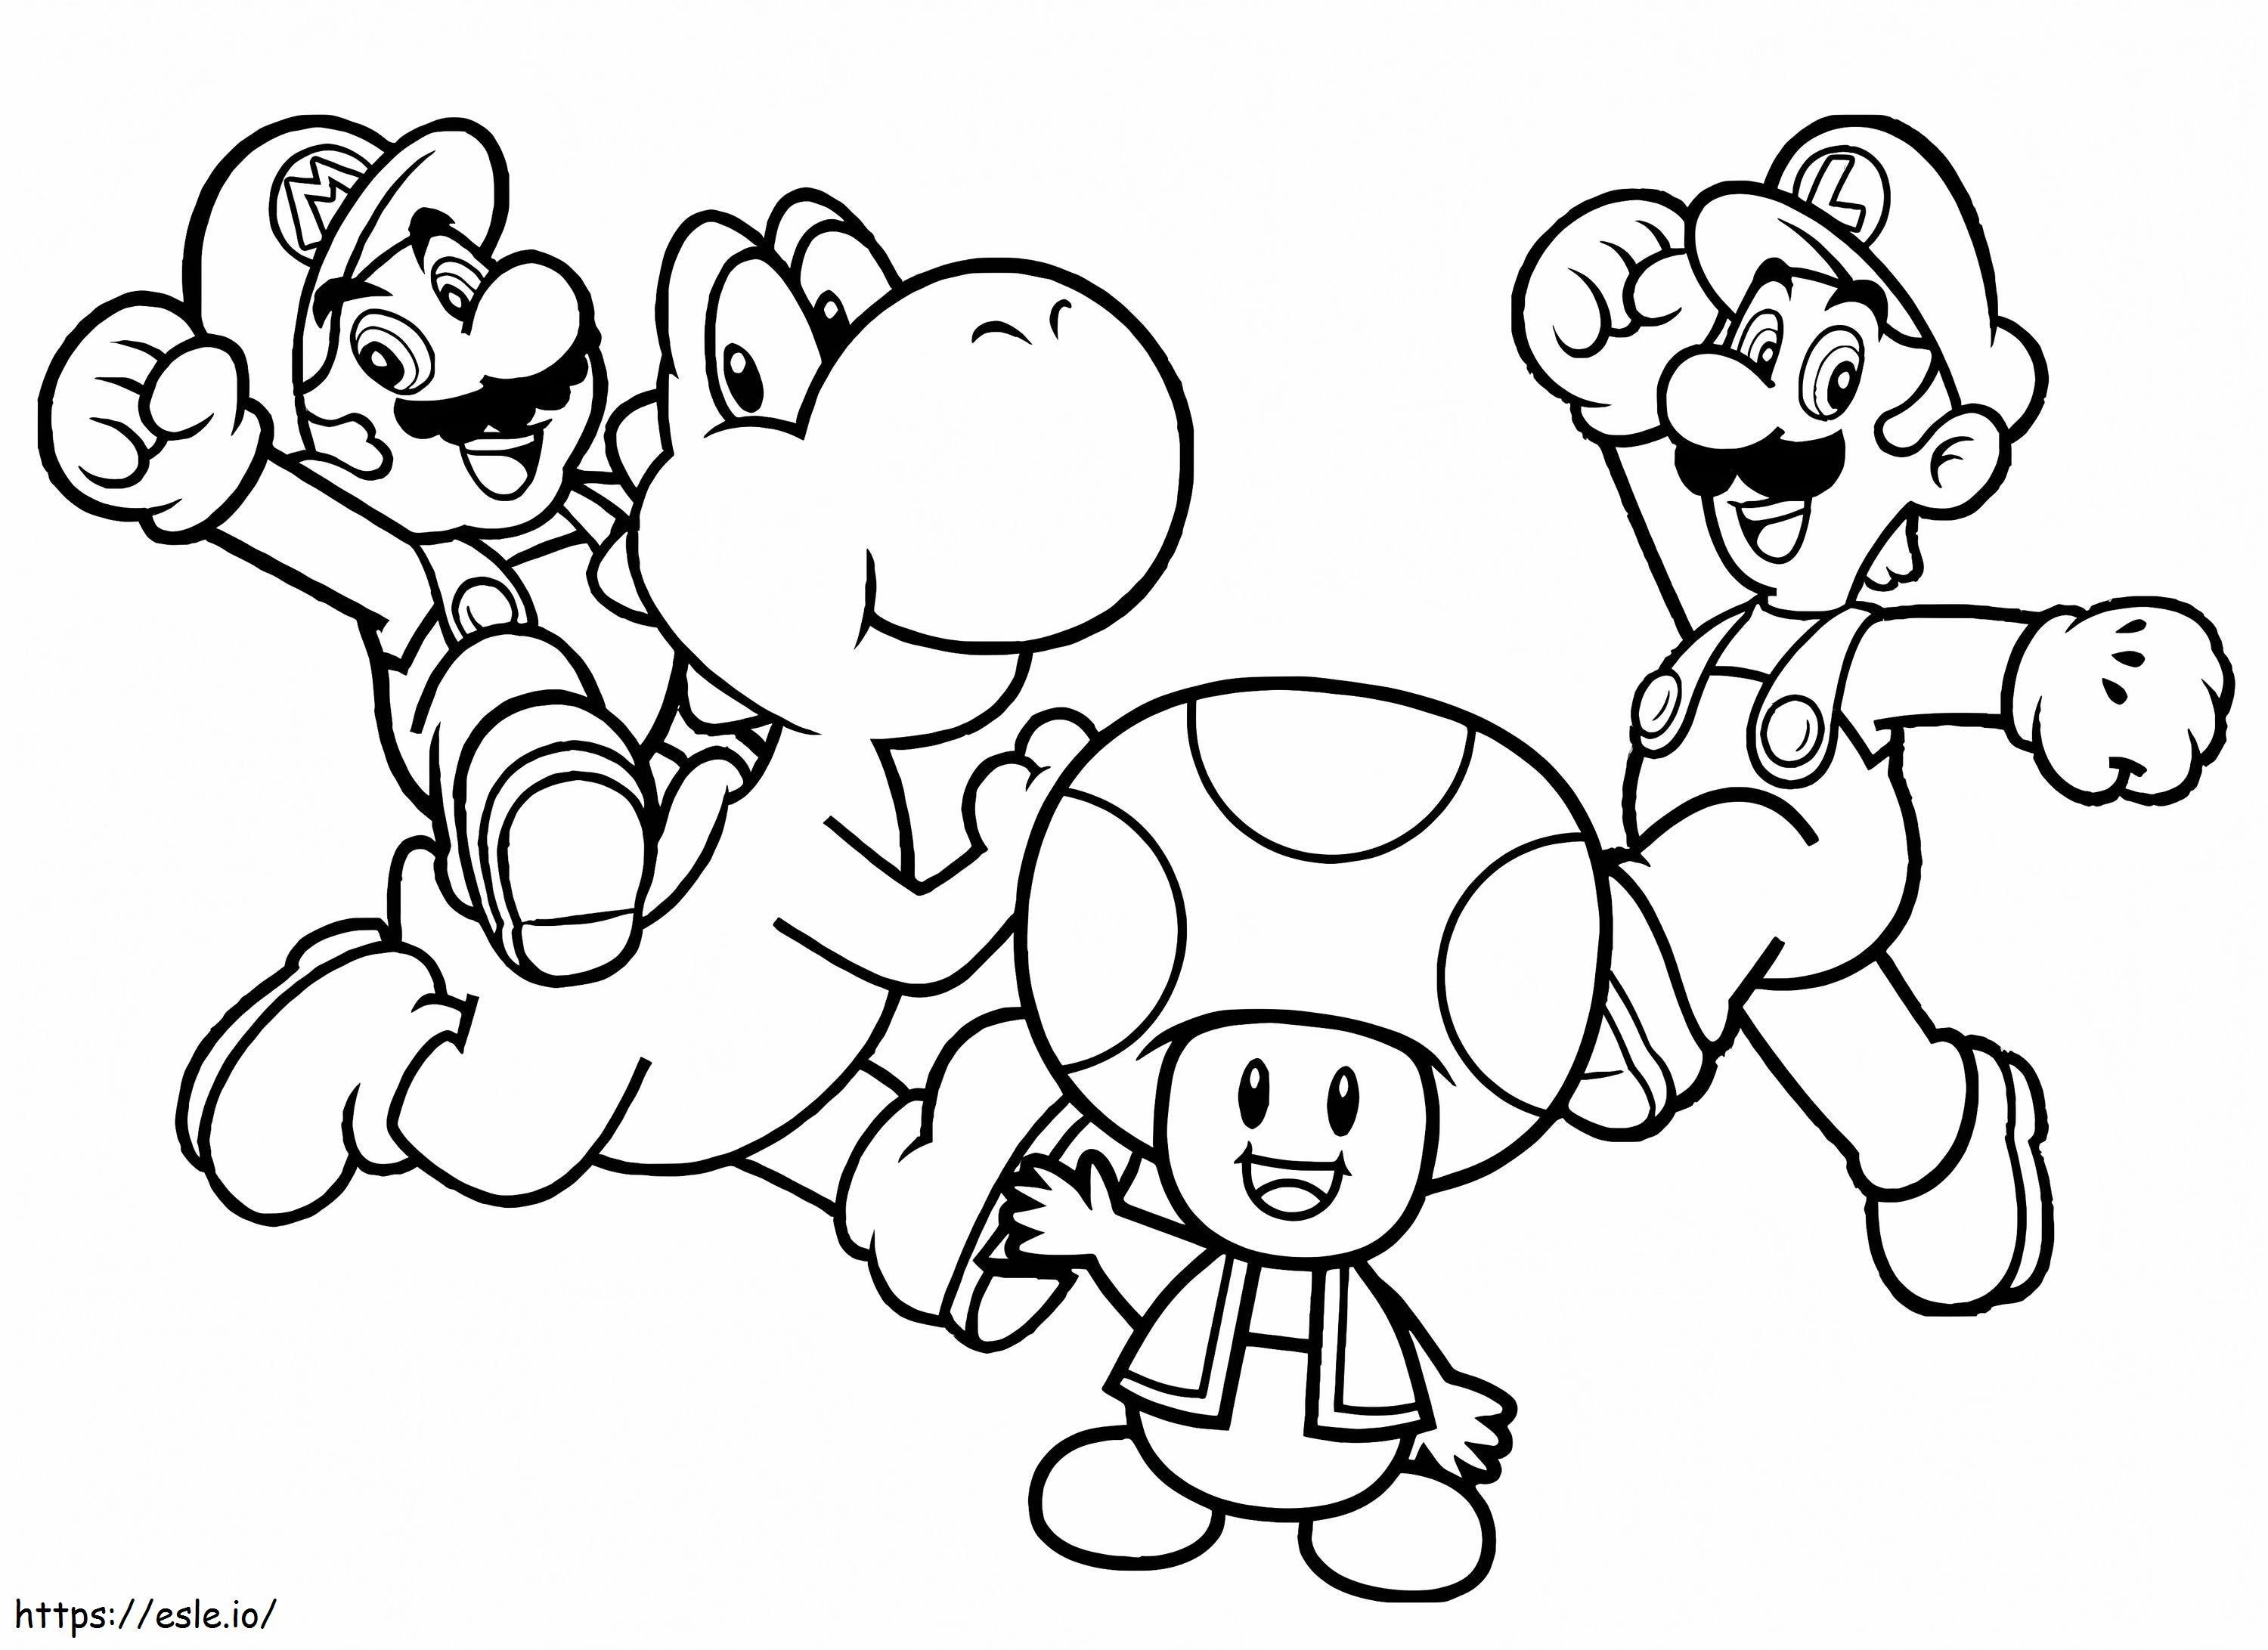 Charaktere von Mario ausmalbilder